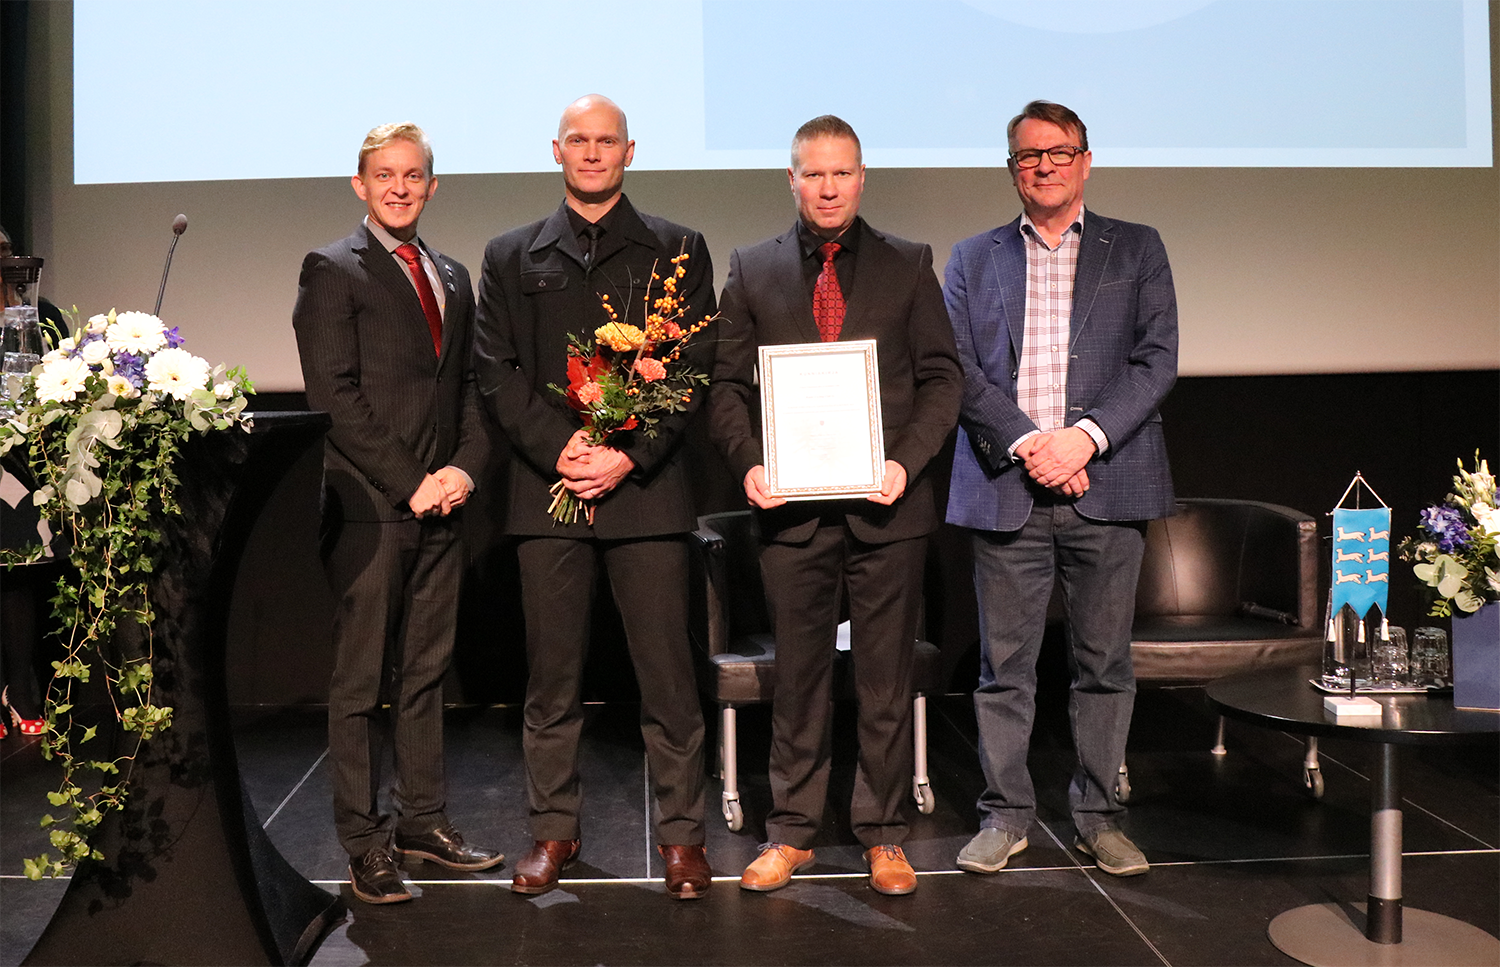 Vuoden järjestöteko 2020 -tunnustus myönnettiin Raahen Cycling Club ry:lle